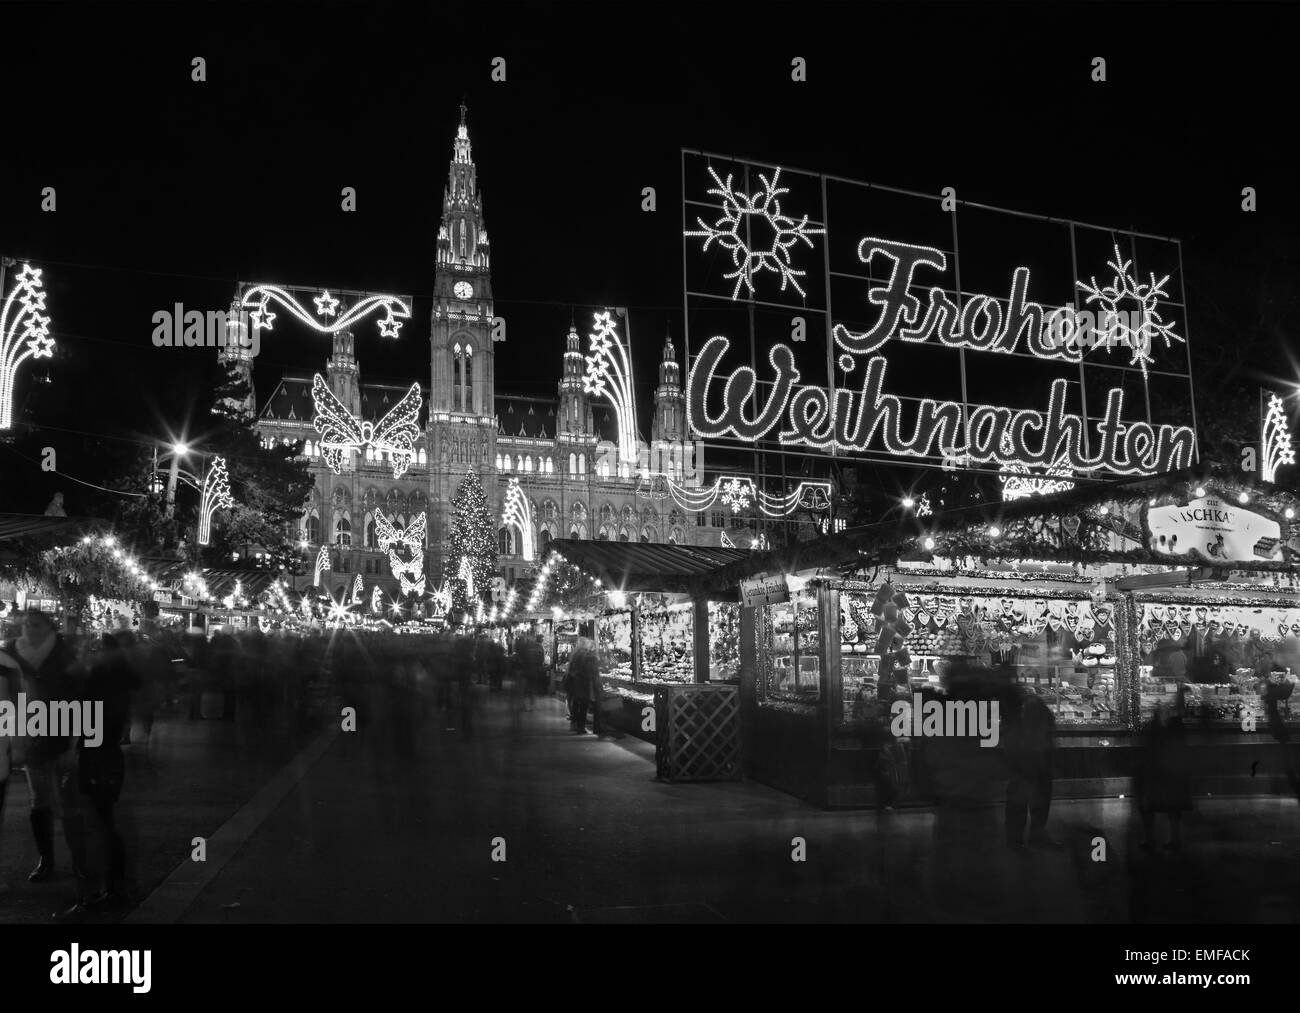 Wien, Österreich - 17. Dezember 2014: Die Fassade des Rathauses und Weihnachten Dekoration. Stockfoto